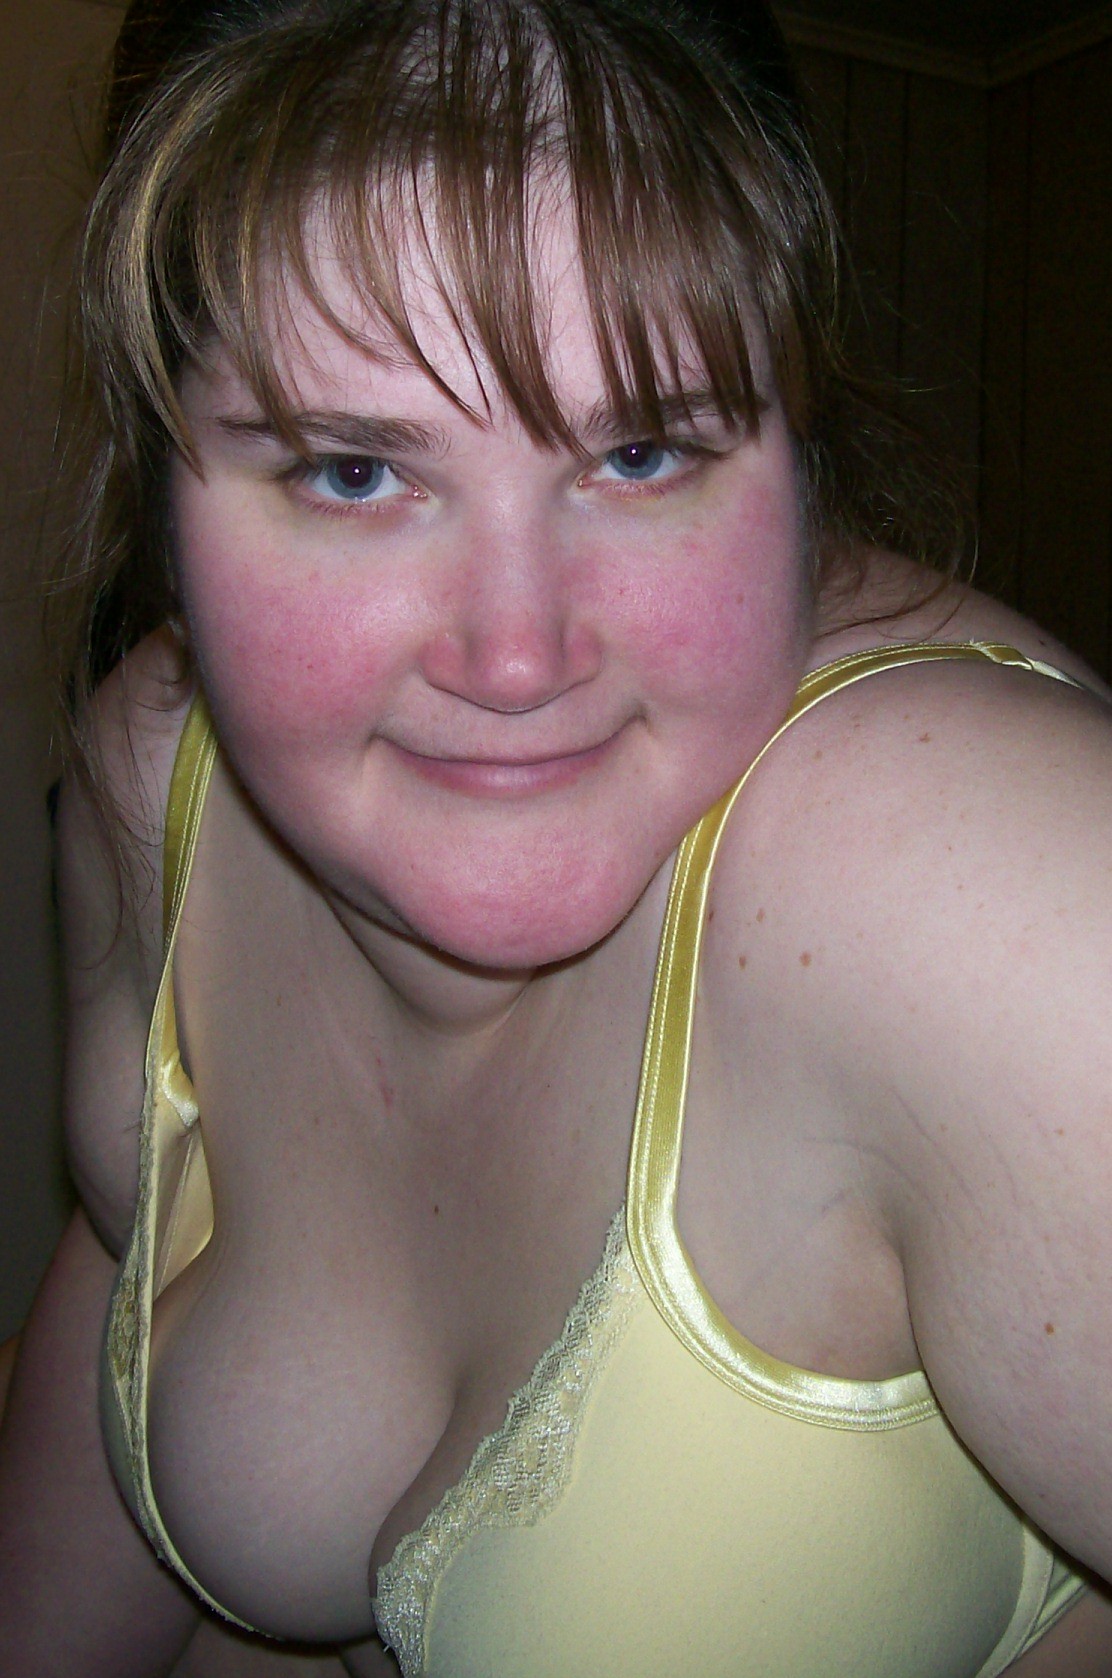 Big tits on this big bbw ex girlfriend blowjobs pics pic